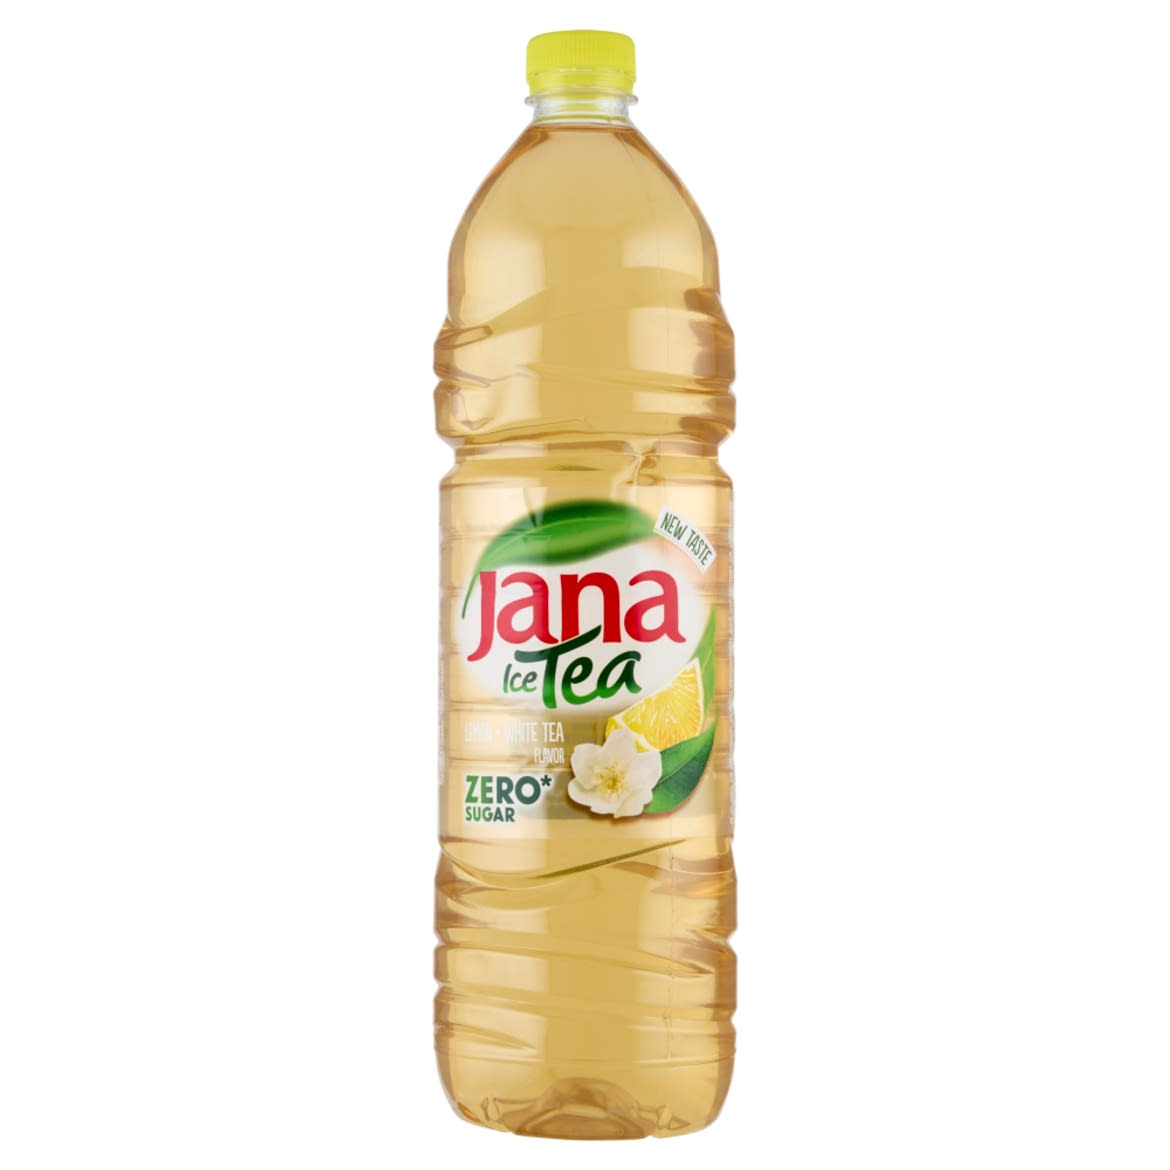 Jana Ice Tea energiamentes, szénsavmentes üdítőital citrom és a fehér tea ízével